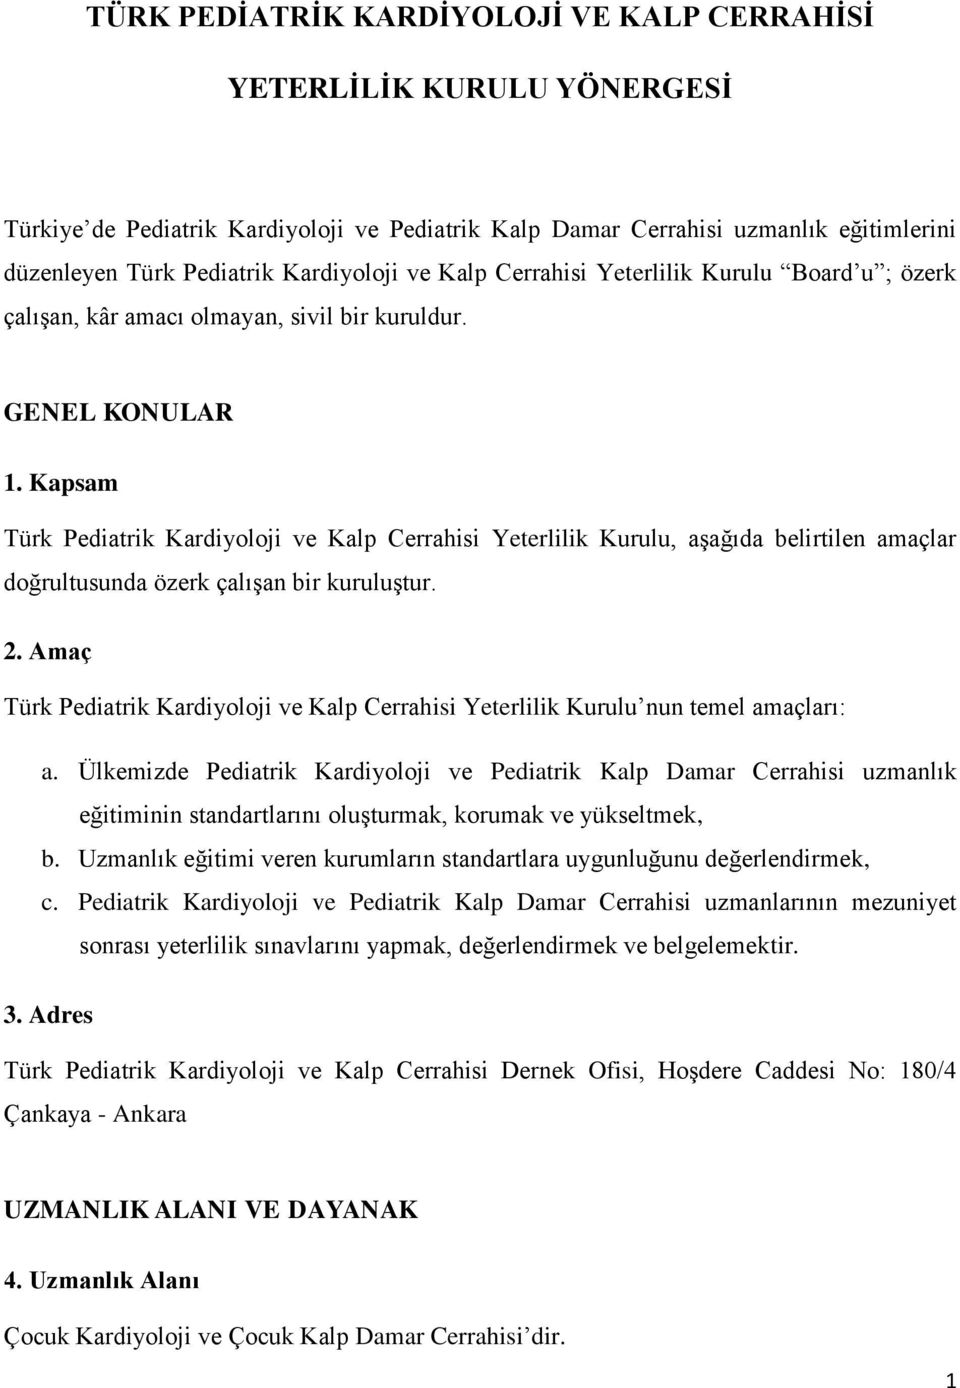 Kapsam Türk Pediatrik Kardiyoloji ve Kalp Cerrahisi Yeterlilik Kurulu, aşağıda belirtilen amaçlar doğrultusunda özerk çalışan bir kuruluştur. 2.